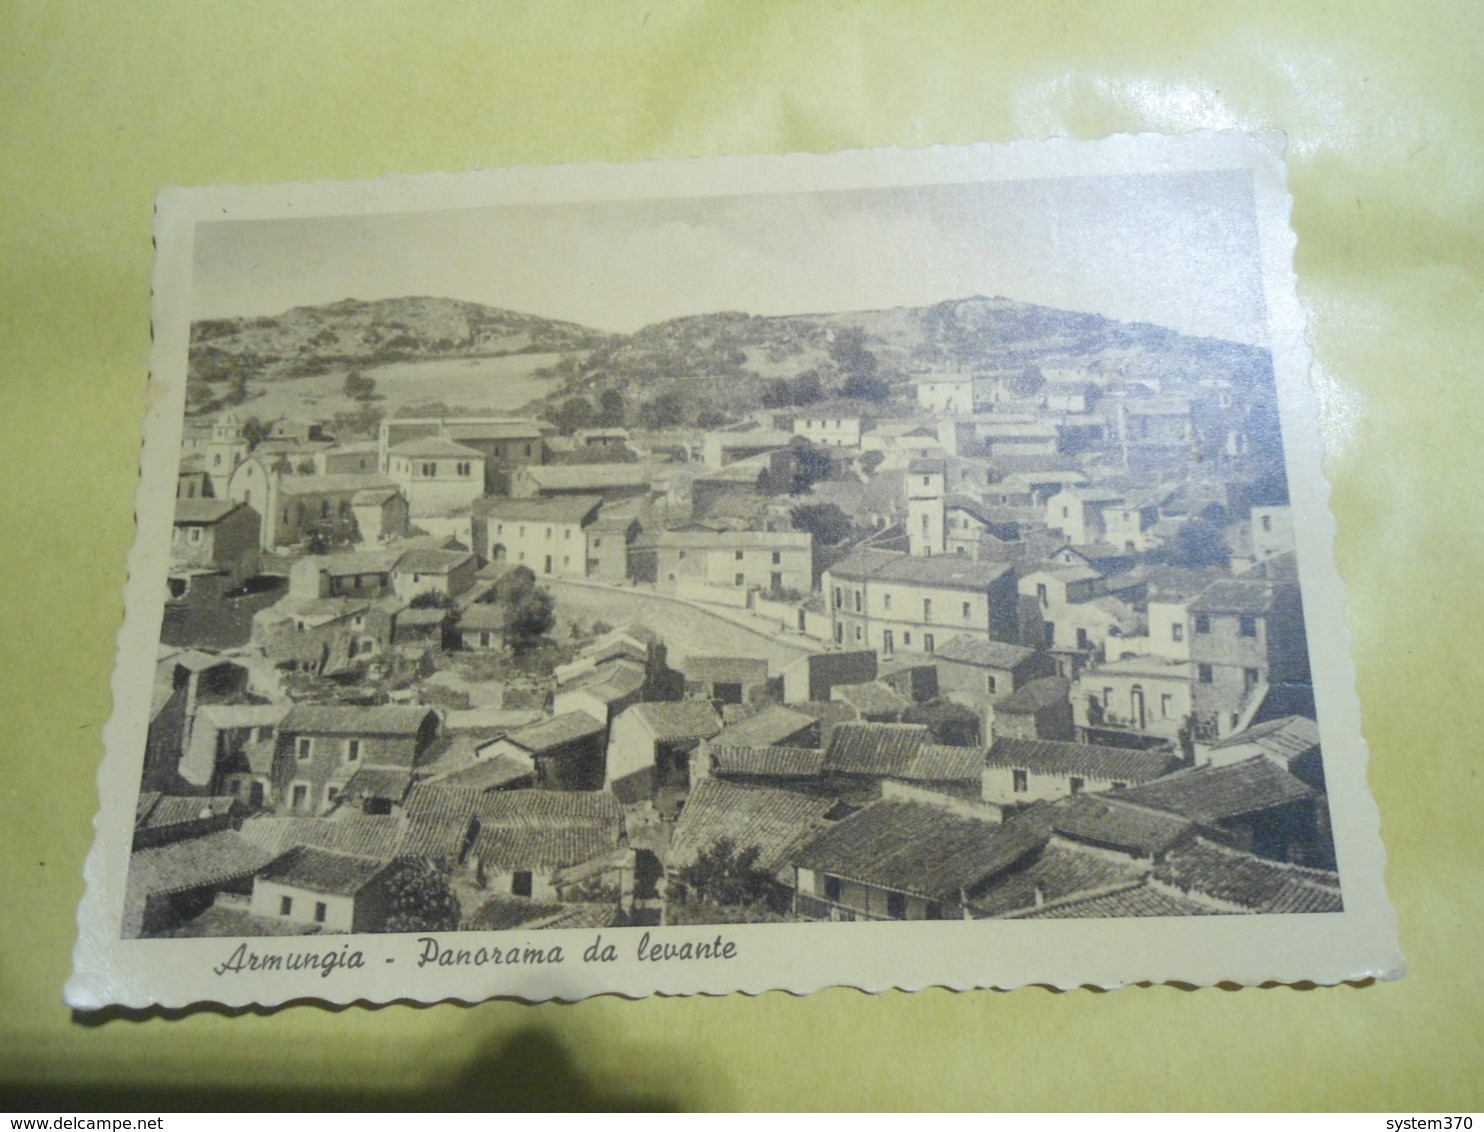 ARMUNGIA - PANORAMA DA LEVANTE - FORMATO GRANDE B/NERO - 1954 - Cagliari